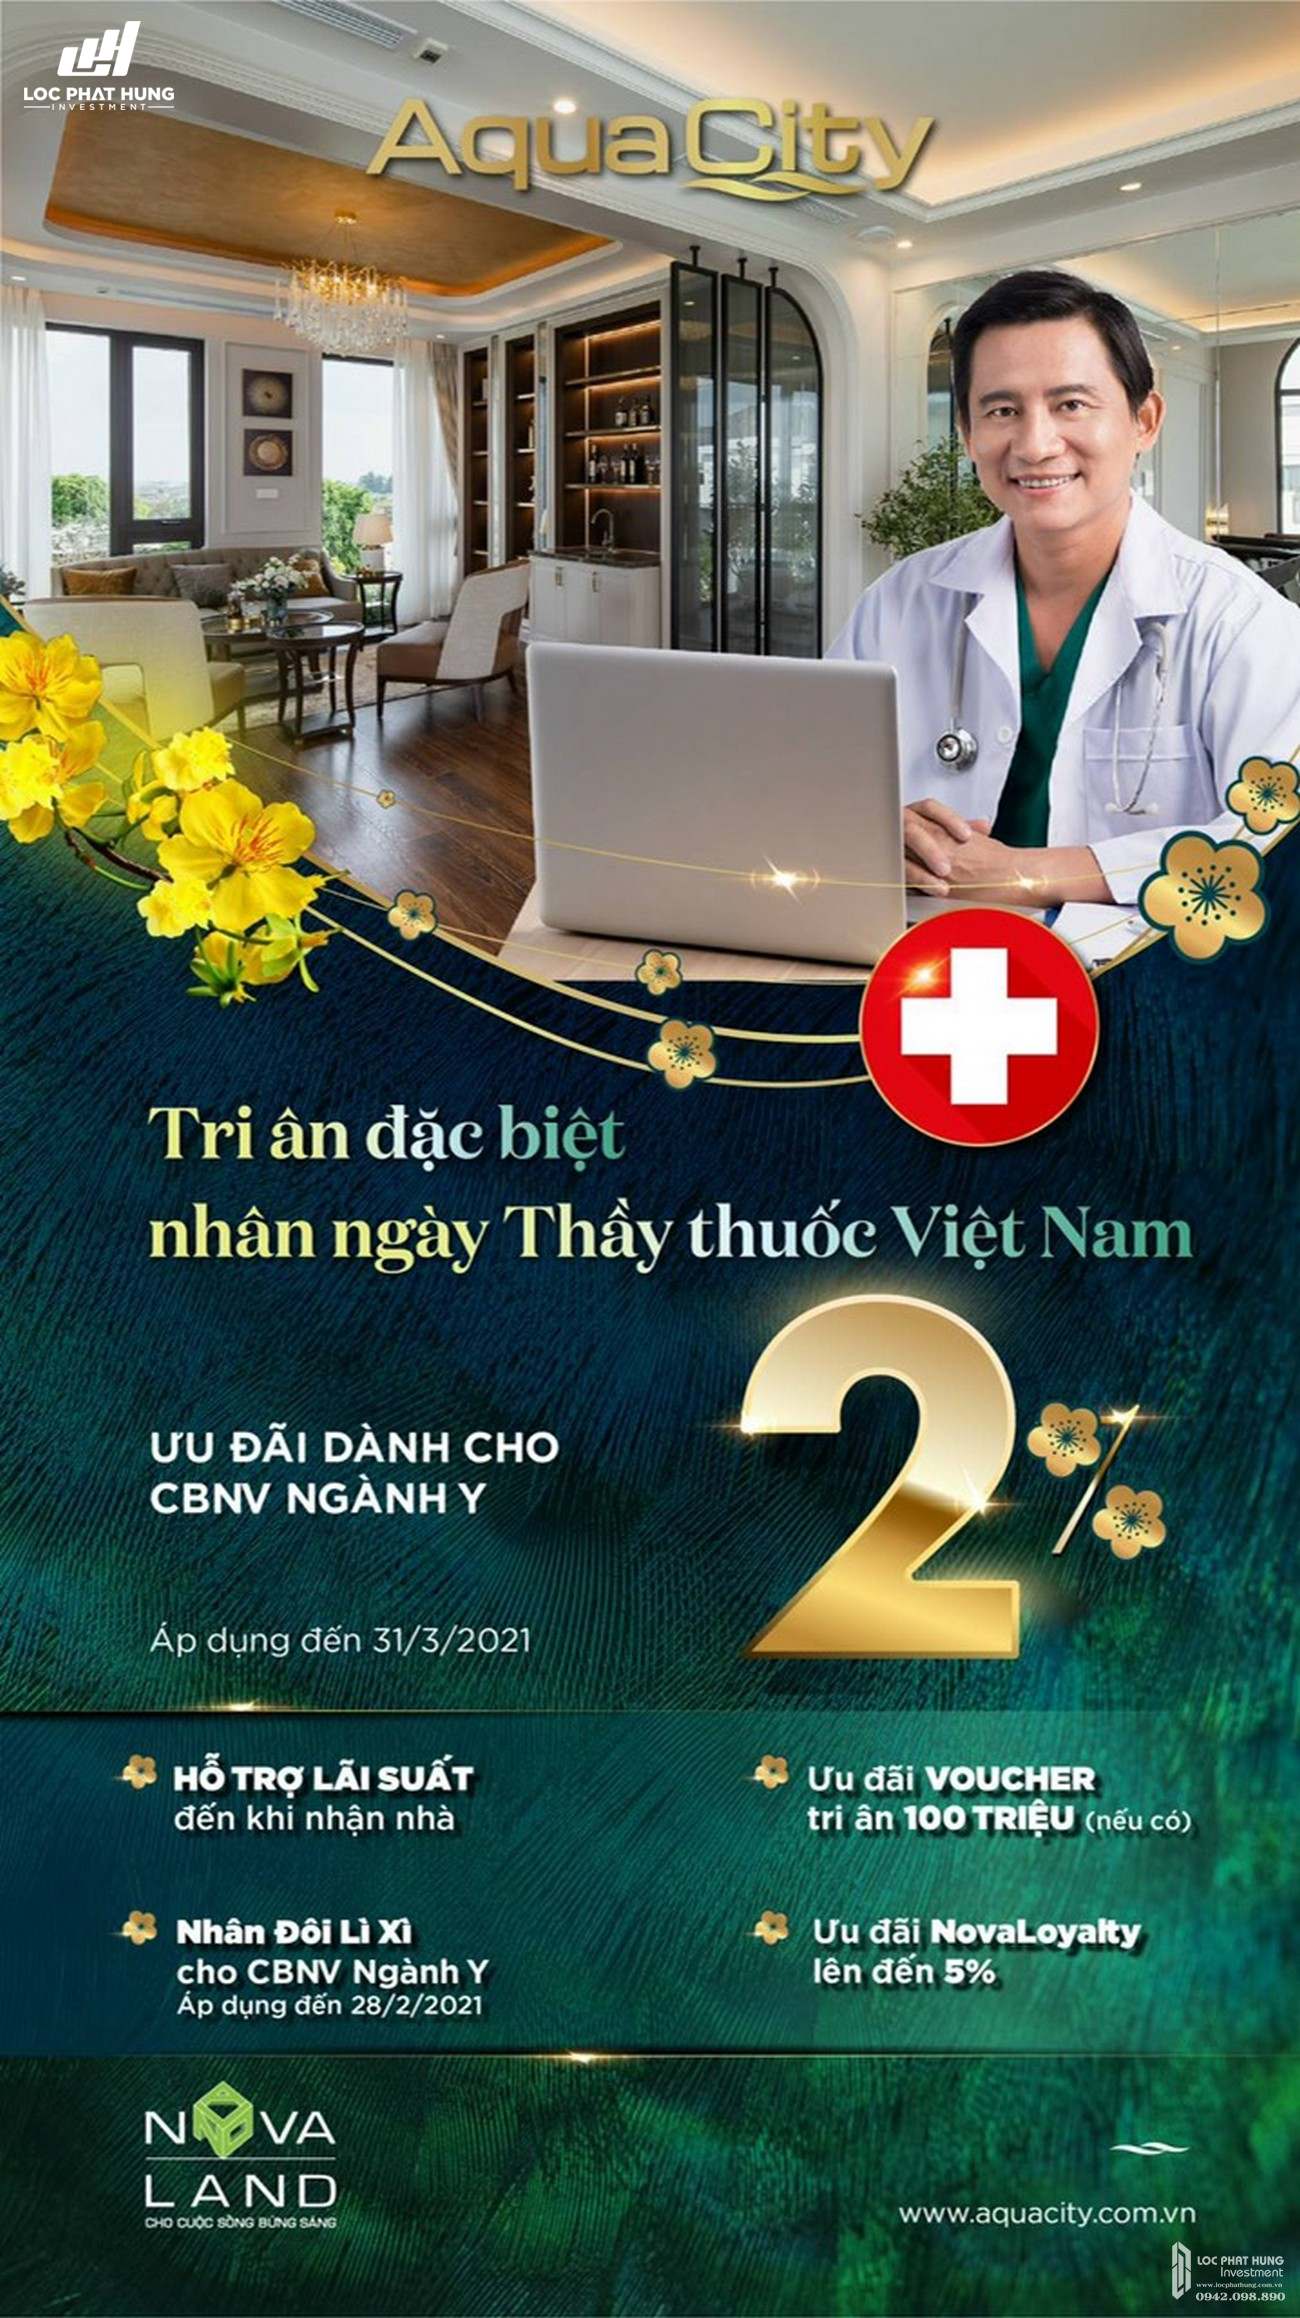 Ưu đãi dành cho cán bộ công nhân viên ngành y tri ấn nhà thuốc Việt Nam